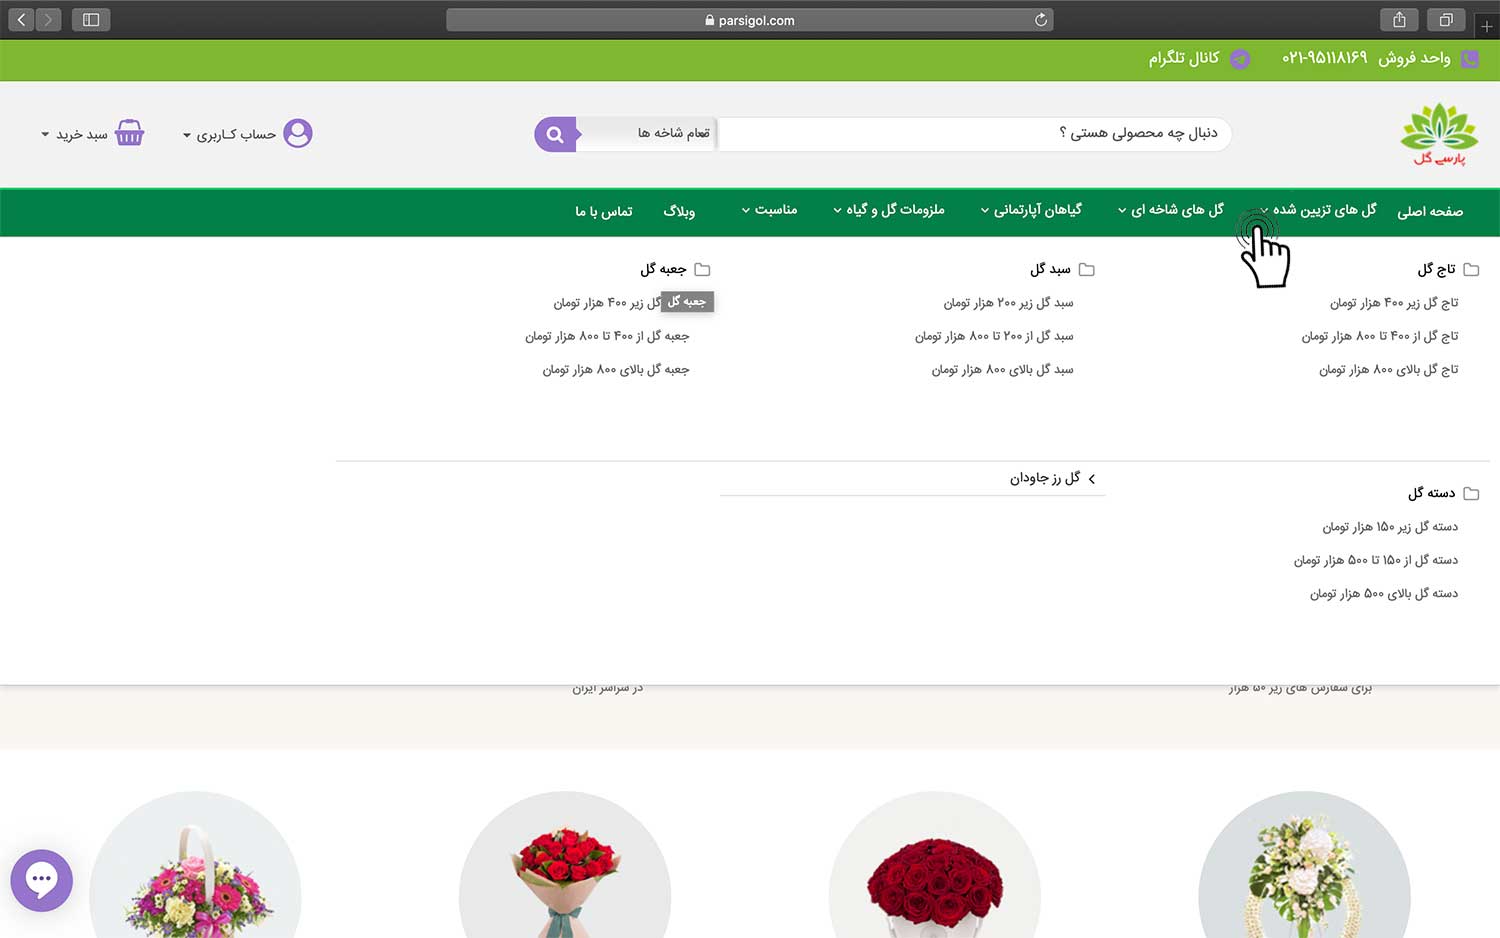 نحوه خرید گل اینترنتی و سفارش گل آنلاین در گلفروشی آنلاین پارسی گل